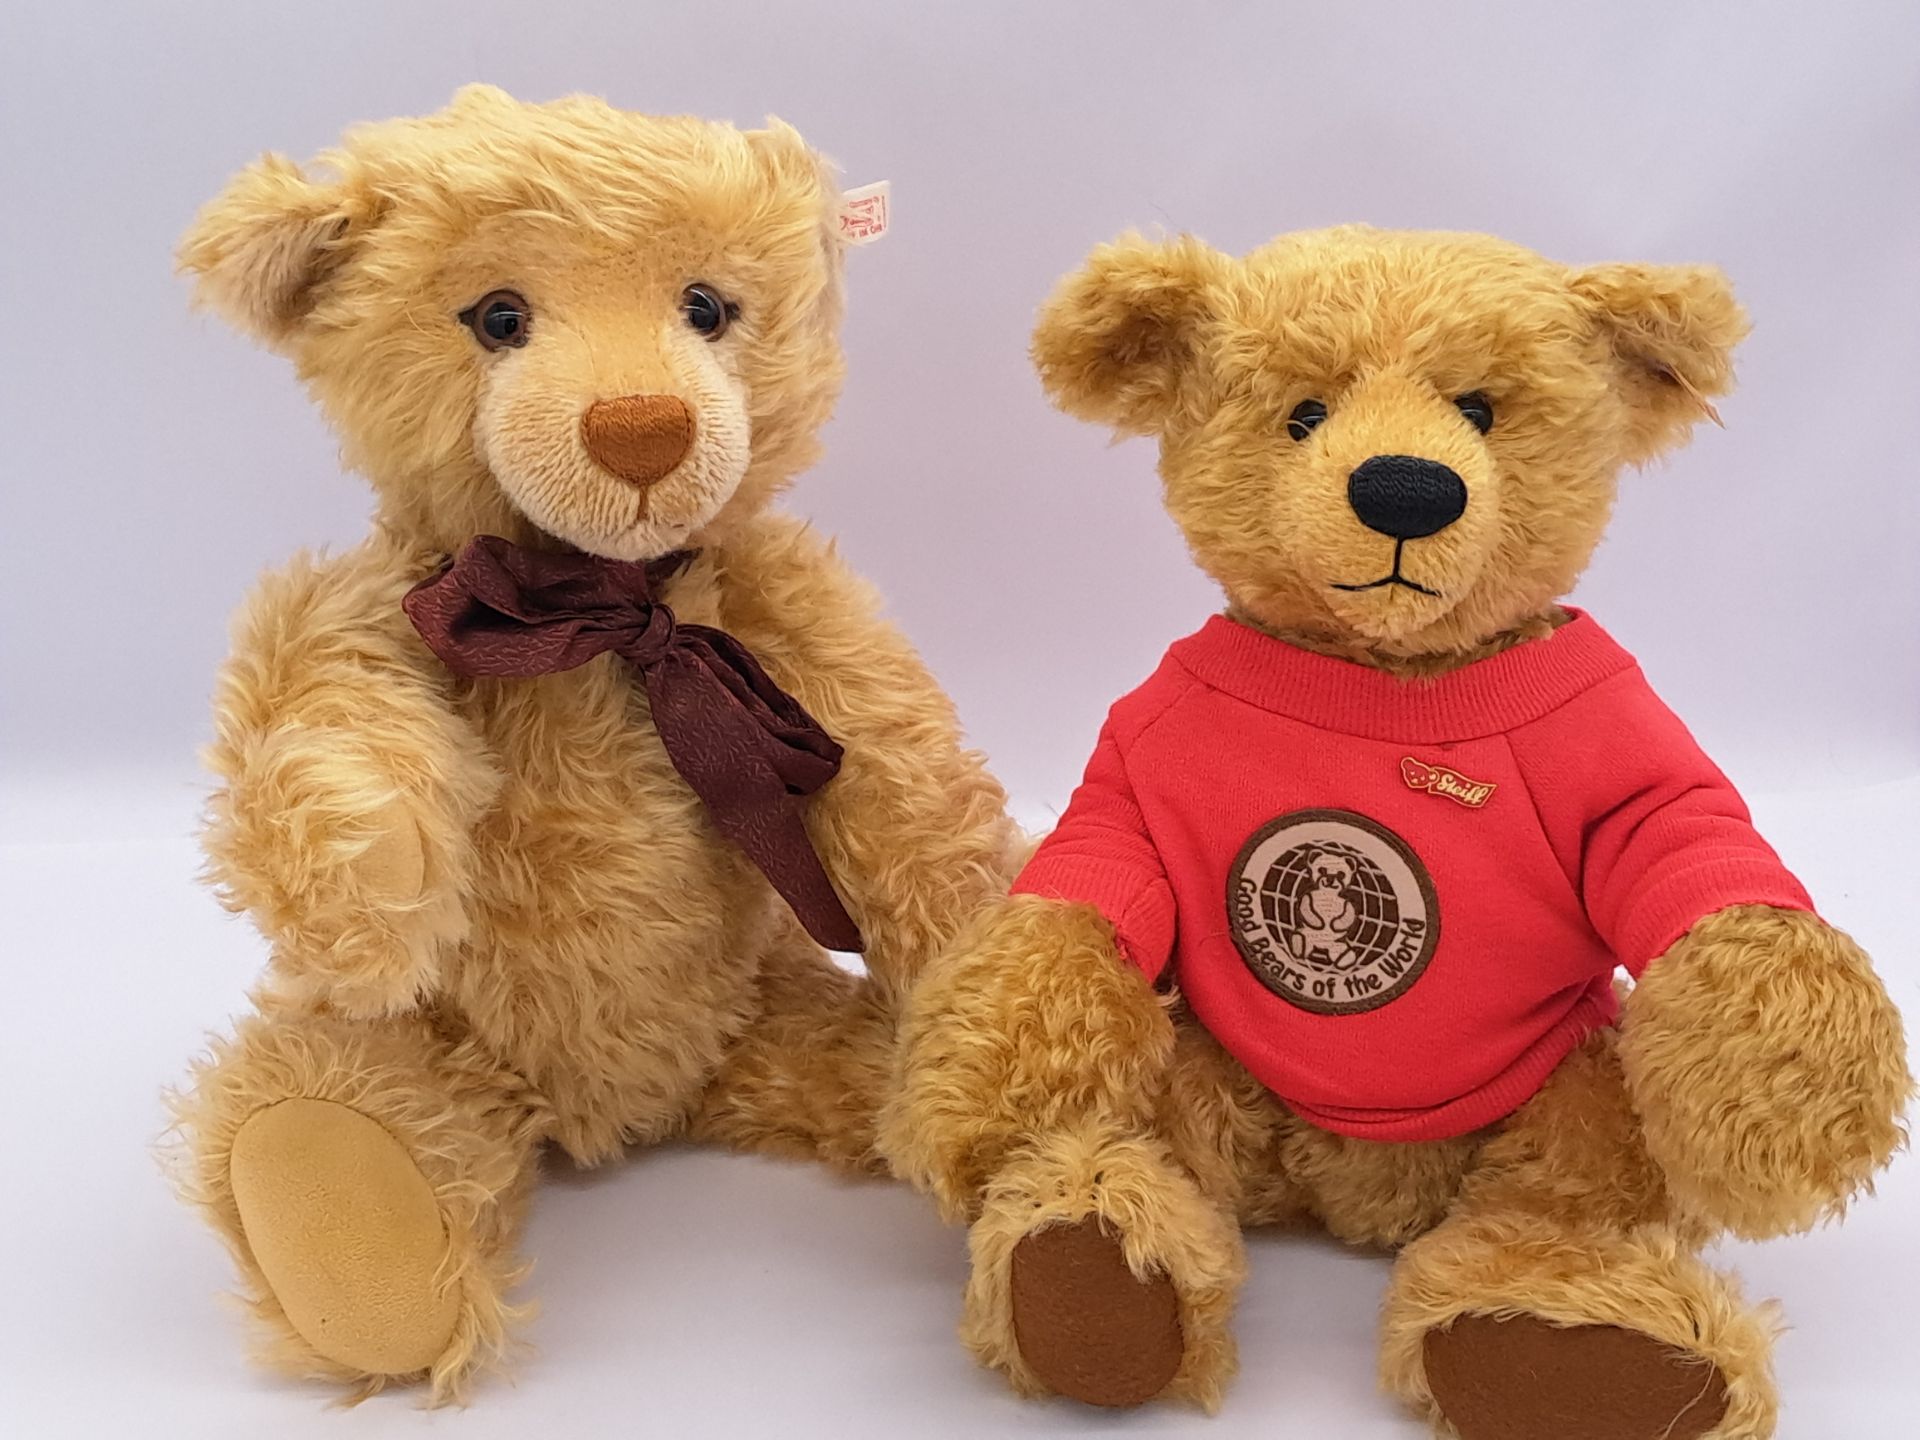 Steiff pair of bears: (1) Good Bears of the World Gulliver; (2) Steiff Millennium teddy bear